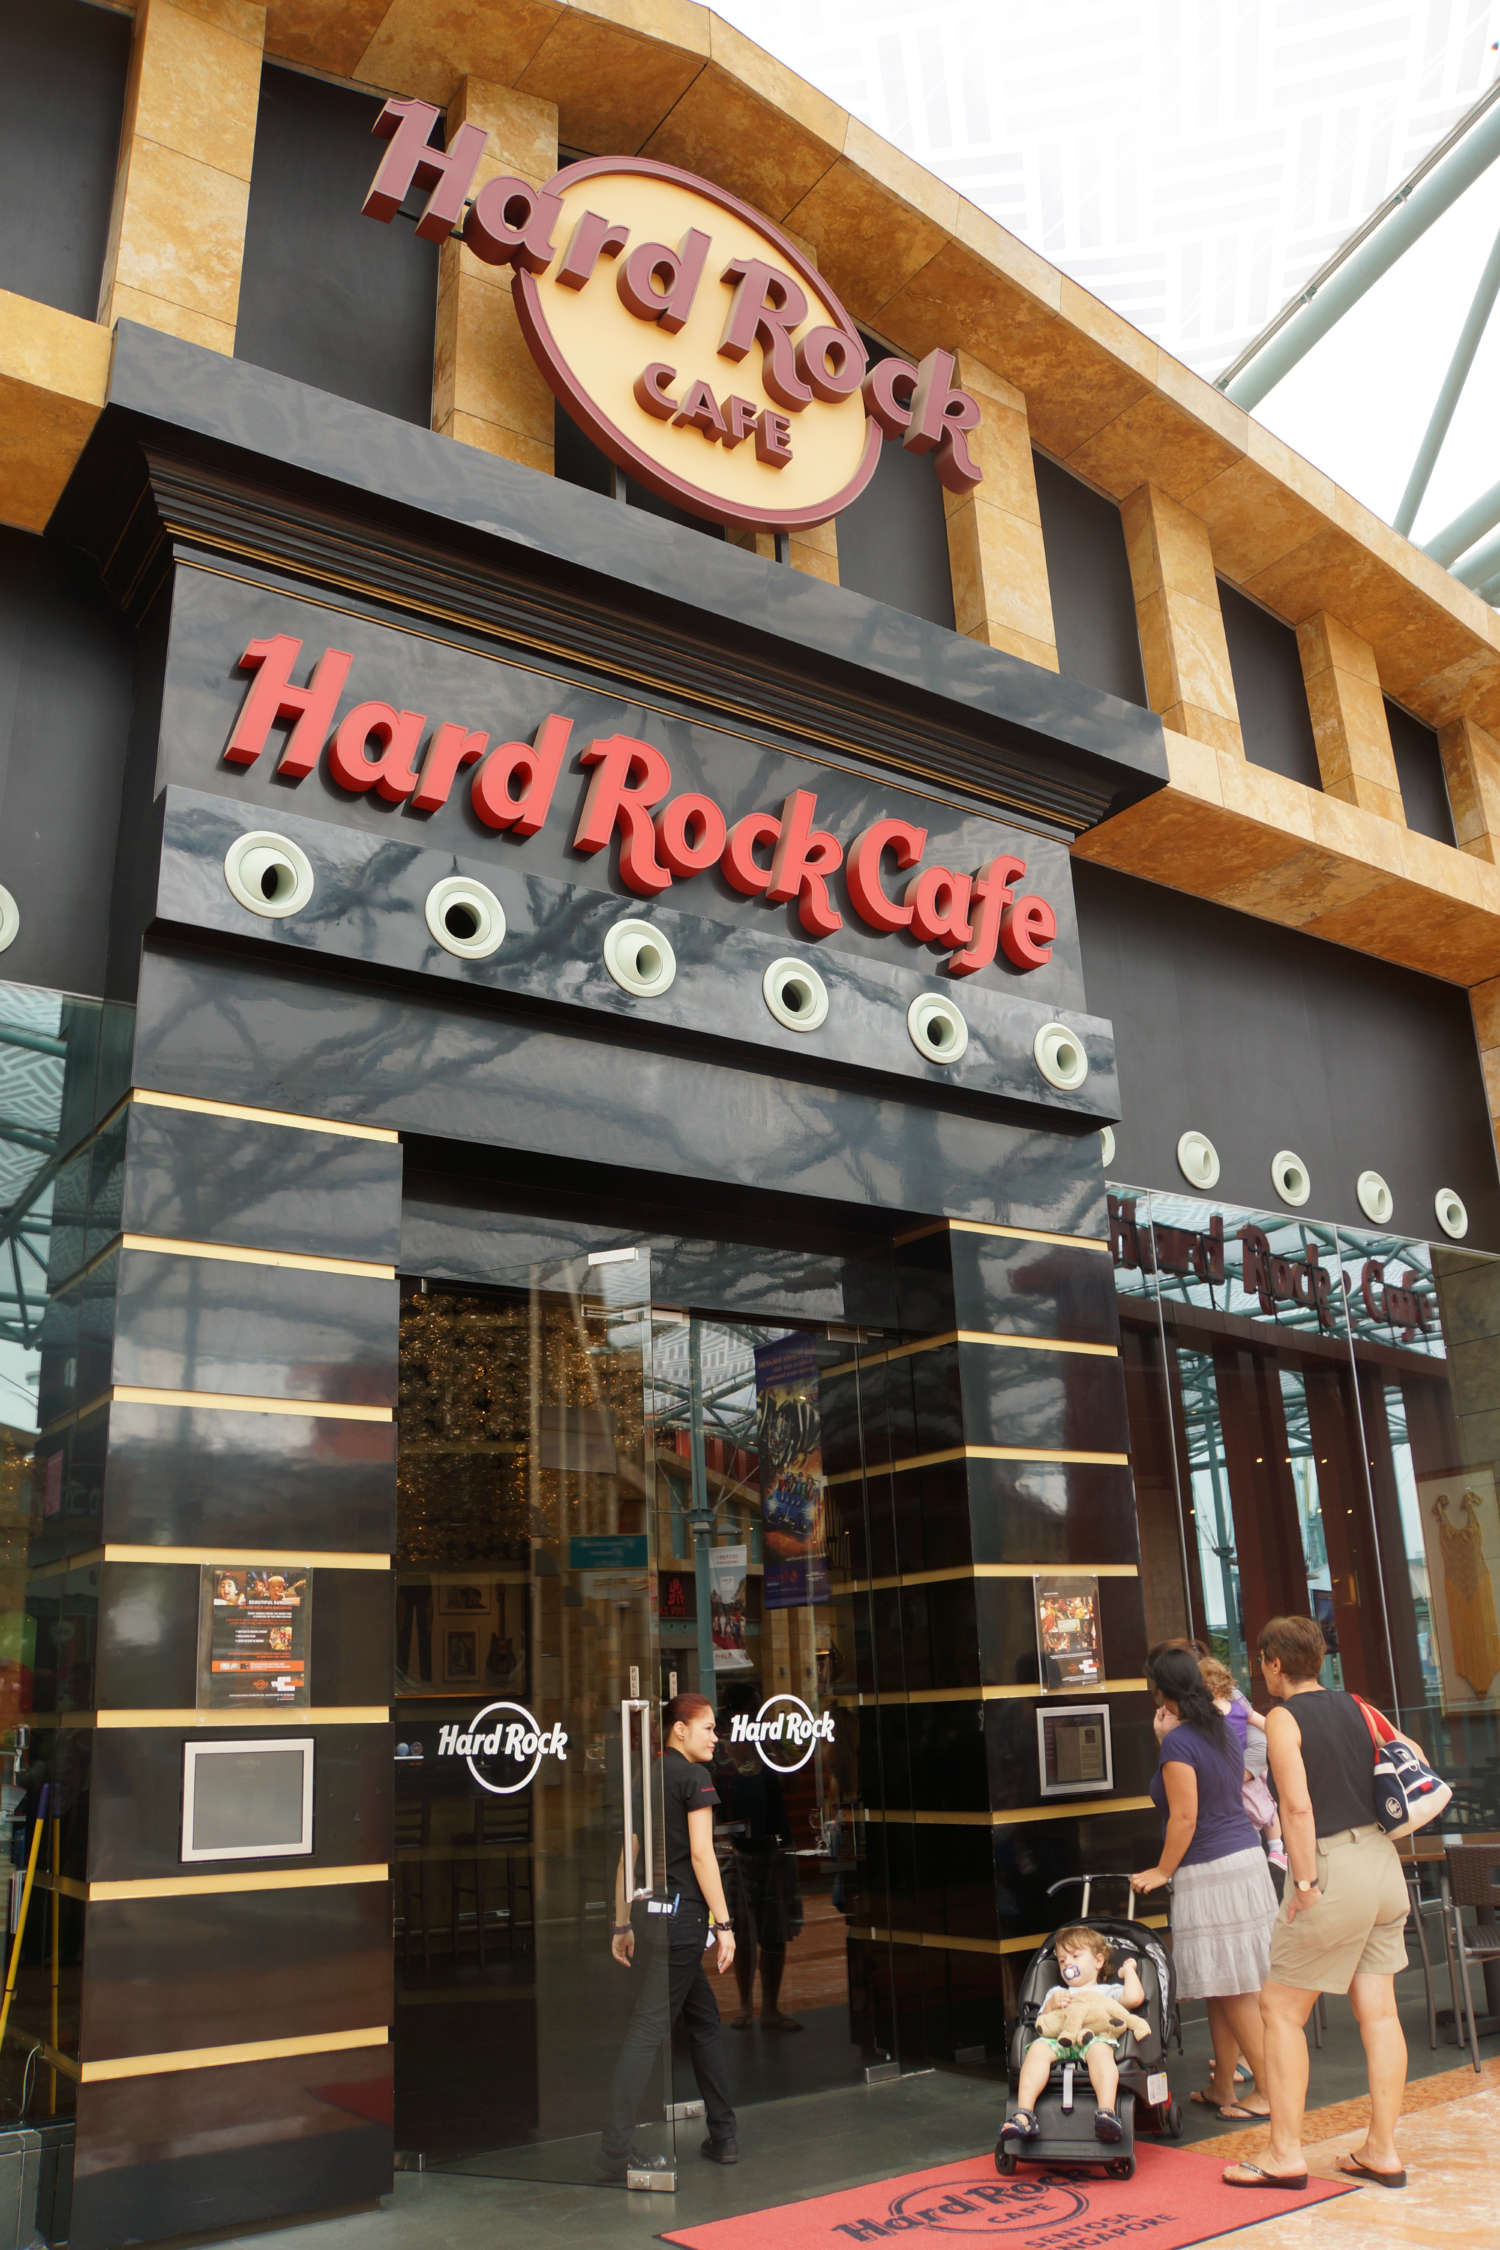 Hard Rock Cafe Singapore